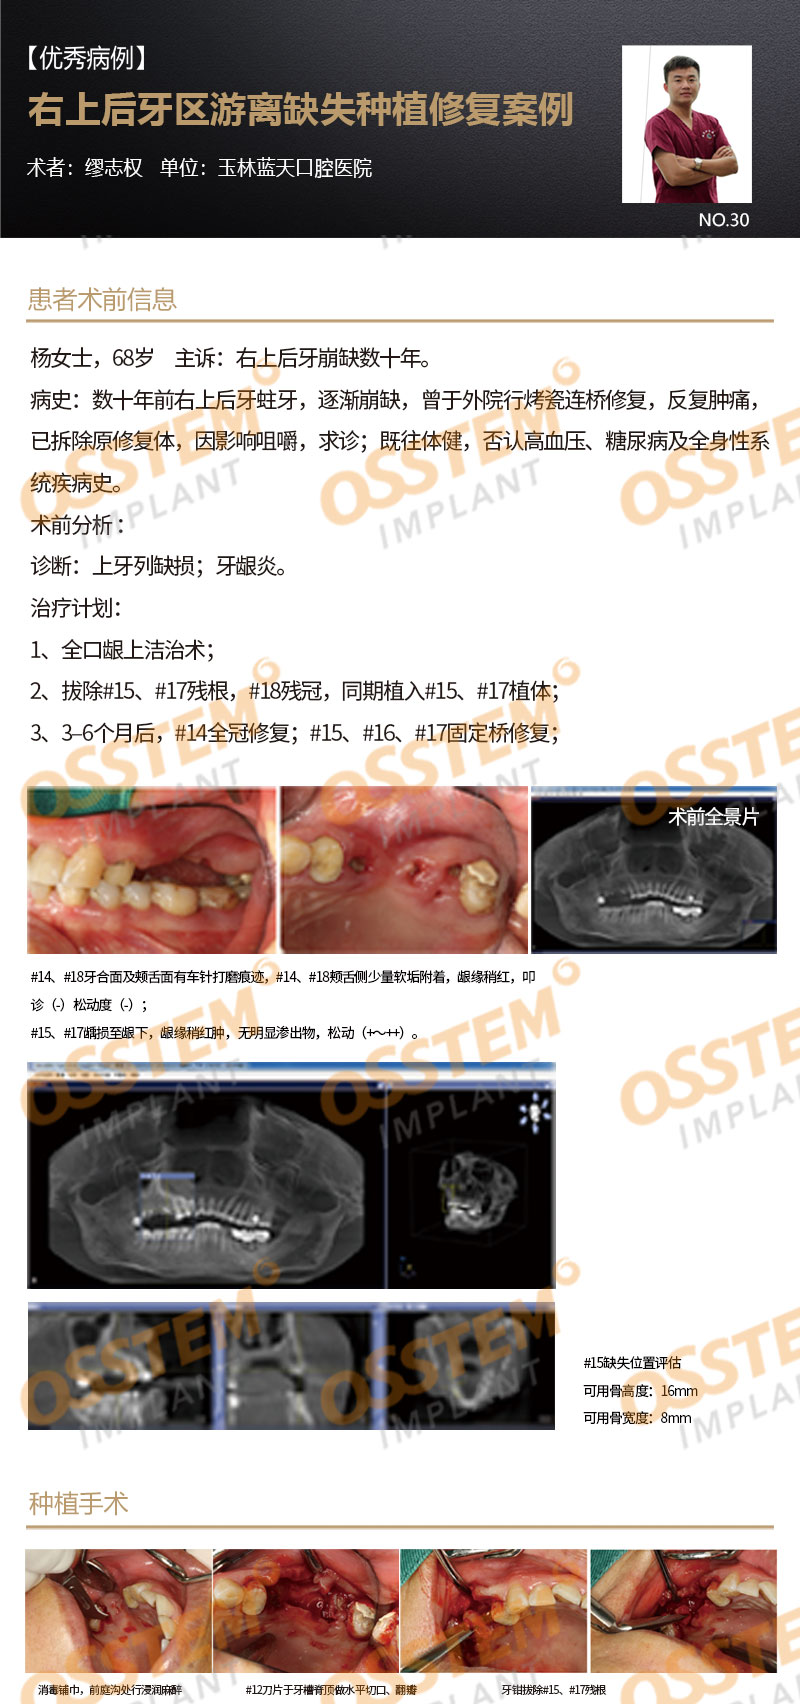 【优秀病例】右上后牙区游离缺失种植修复案例-Dr_01.jpg